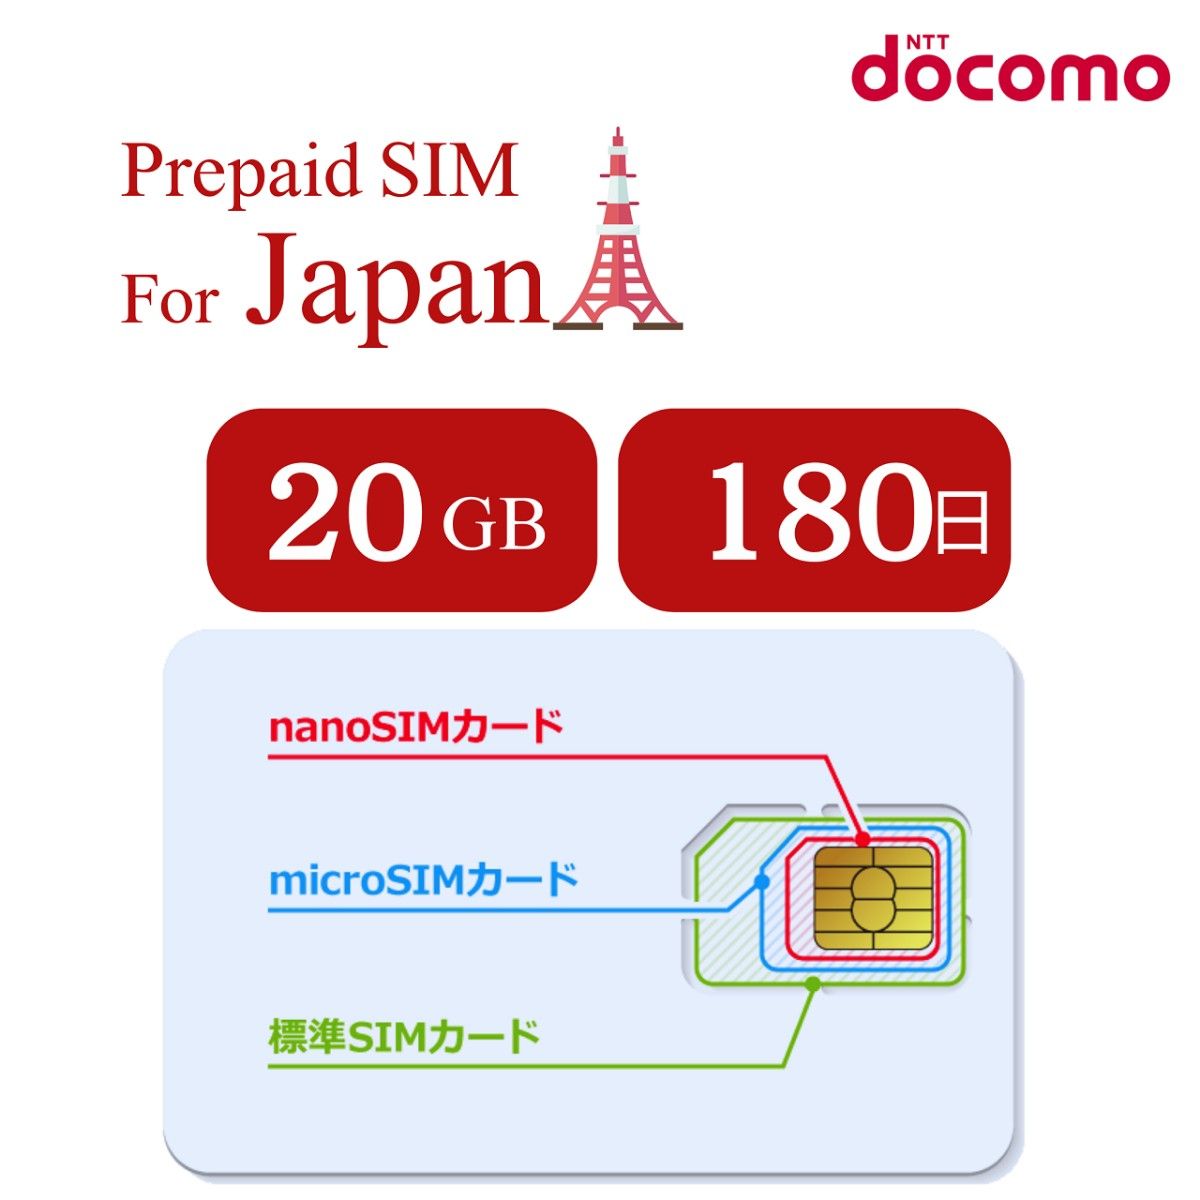 日本プリペイドSIM 180日間 20GB データ通信専用 /NTTドコモ 通信網/契約不要/日英マニュアル付/使い捨て